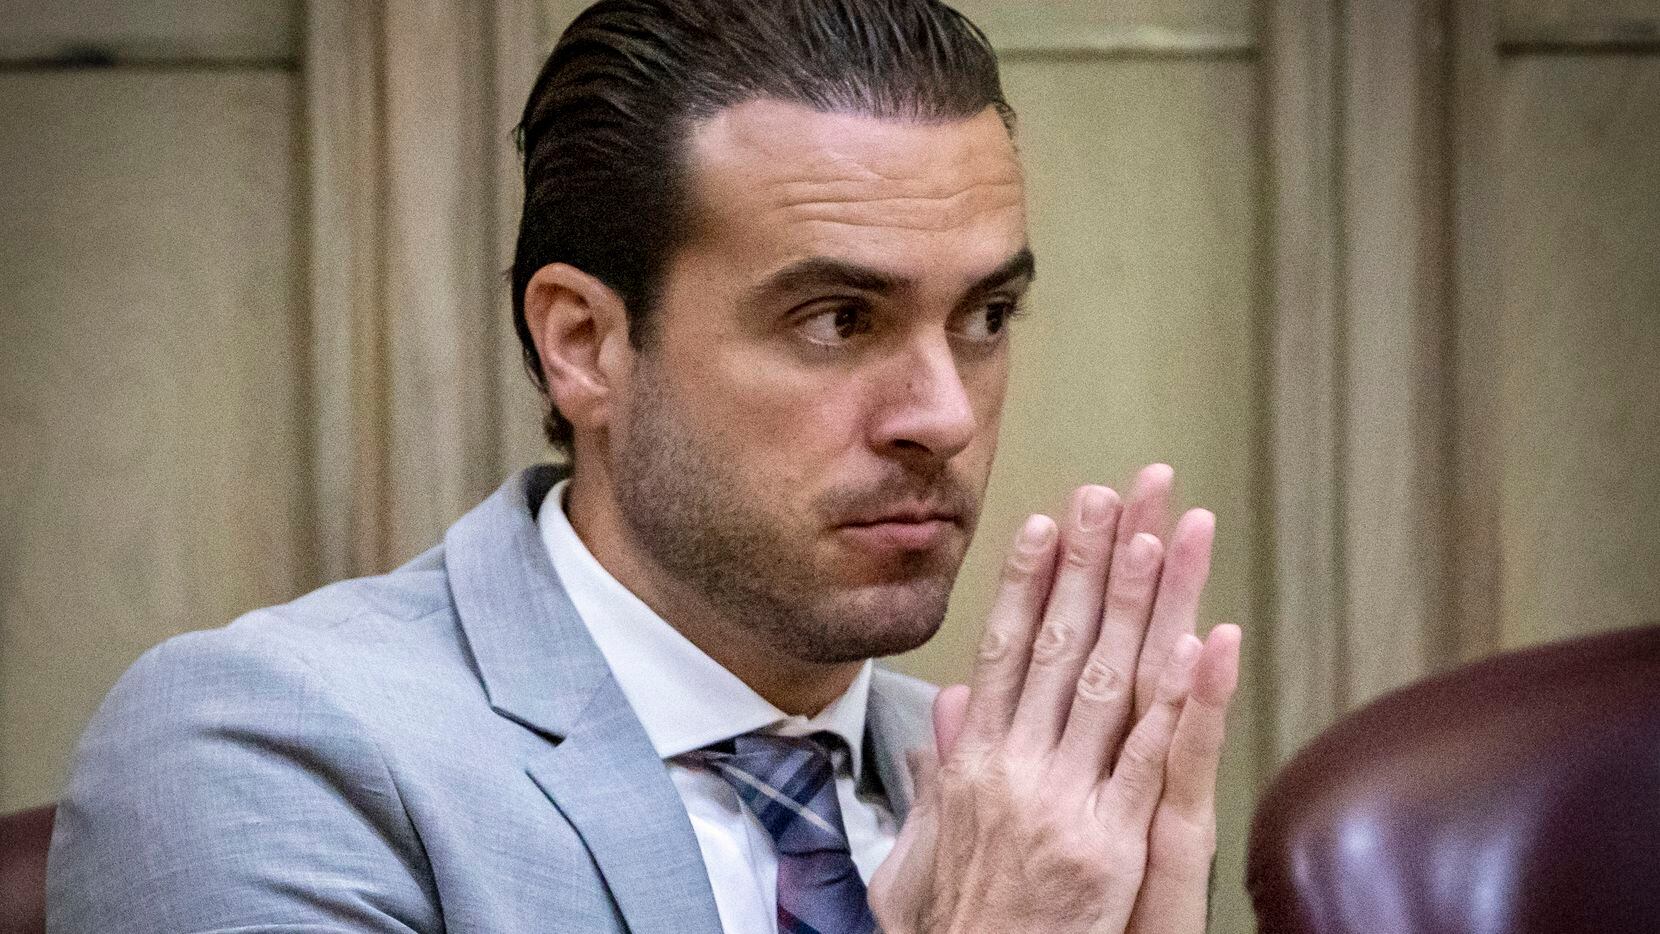 El actor mexicano de telenovelas Pablo Lyle durante el juicio que enfrentó en la corte...